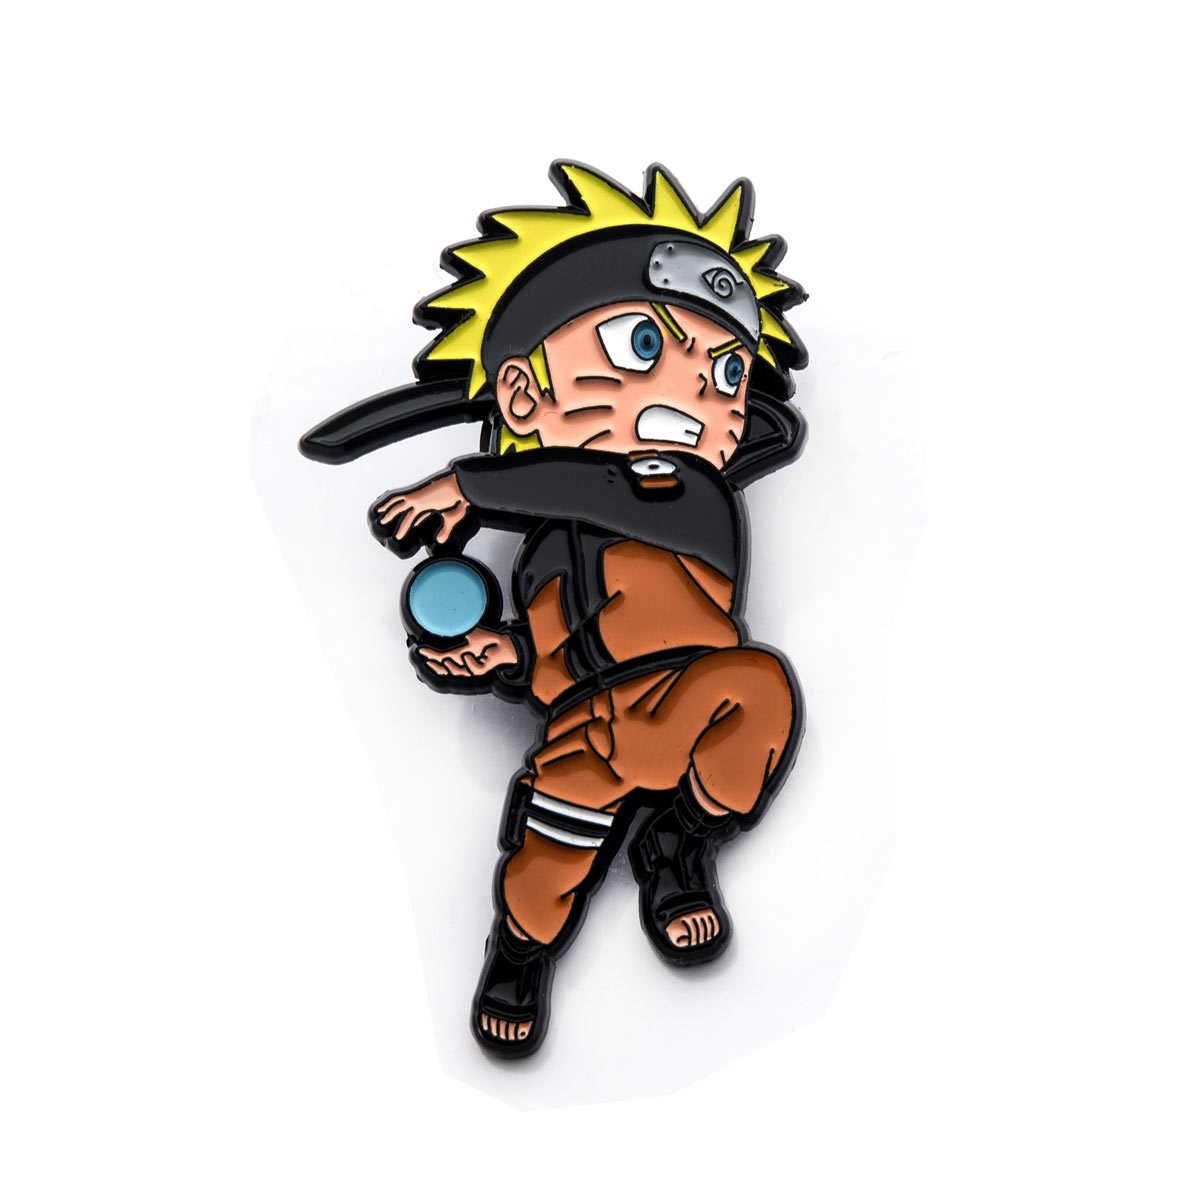 Naruto Chibi Pin là món quà tuyệt vời dành tặng cho những ai yêu thích chú tiểu Naruto. Với cách thiết kế dễ thương và vô cùng đáng yêu, Naruto Chibi Pin sẽ làm tăng thêm sự đáng yêu cho bộ sưu tập của bạn. Hãy chiêm ngưỡng và cùng nhau chia sẻ tình yêu với Naruto nhé!